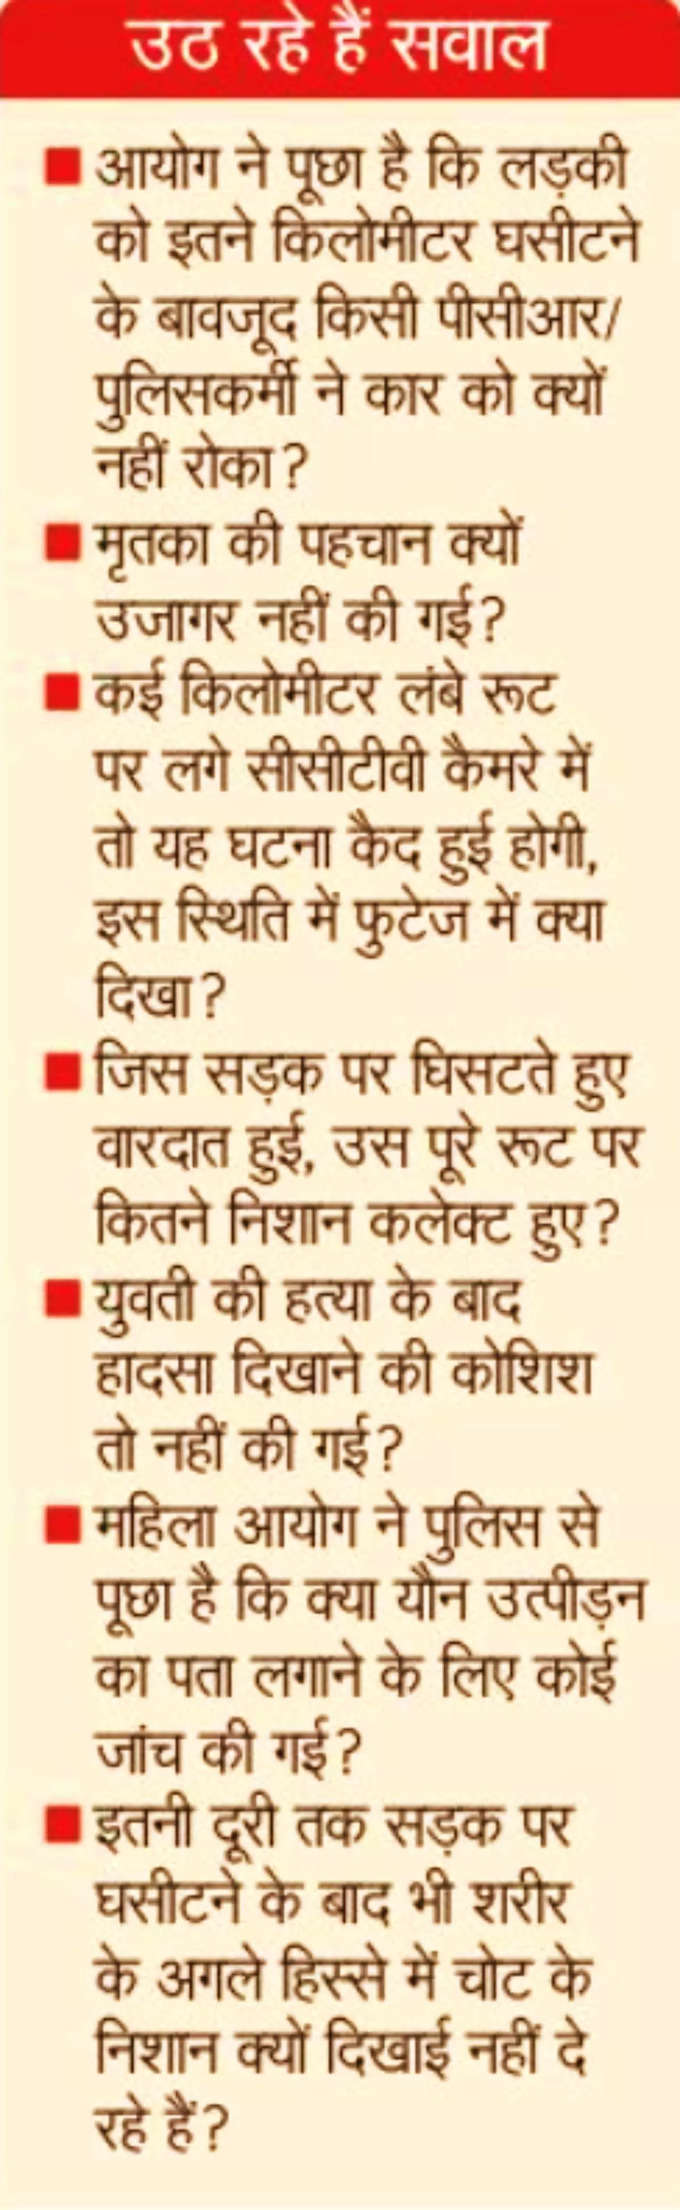 Delhi Police Questions